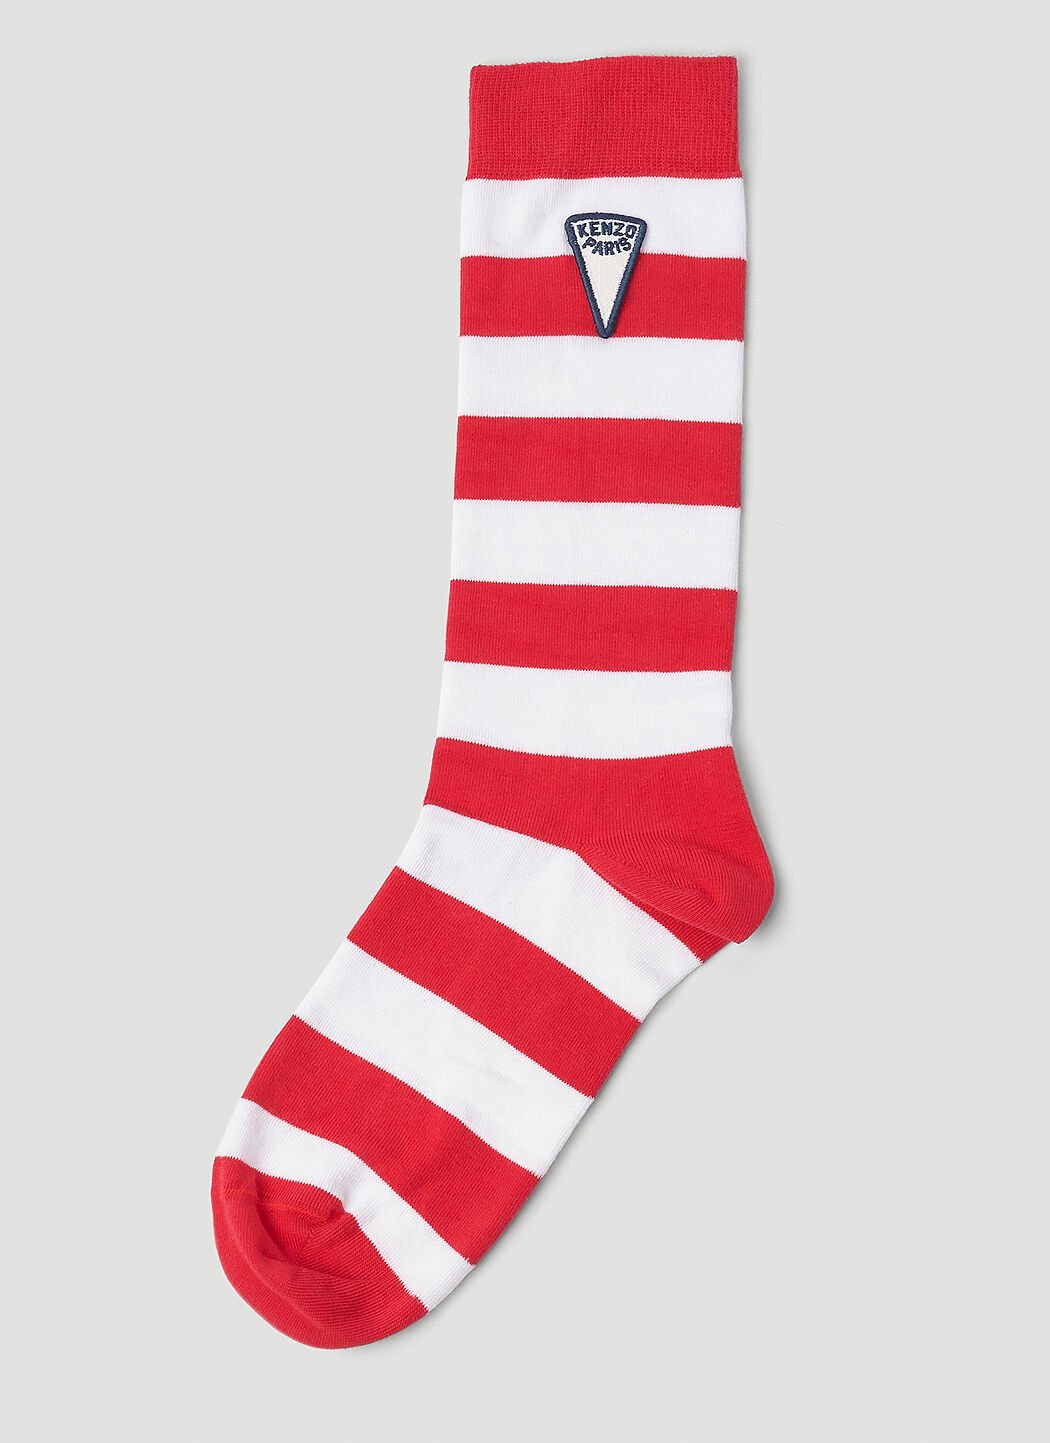 Moncler Grenoble Striped Socks Red mog0153013